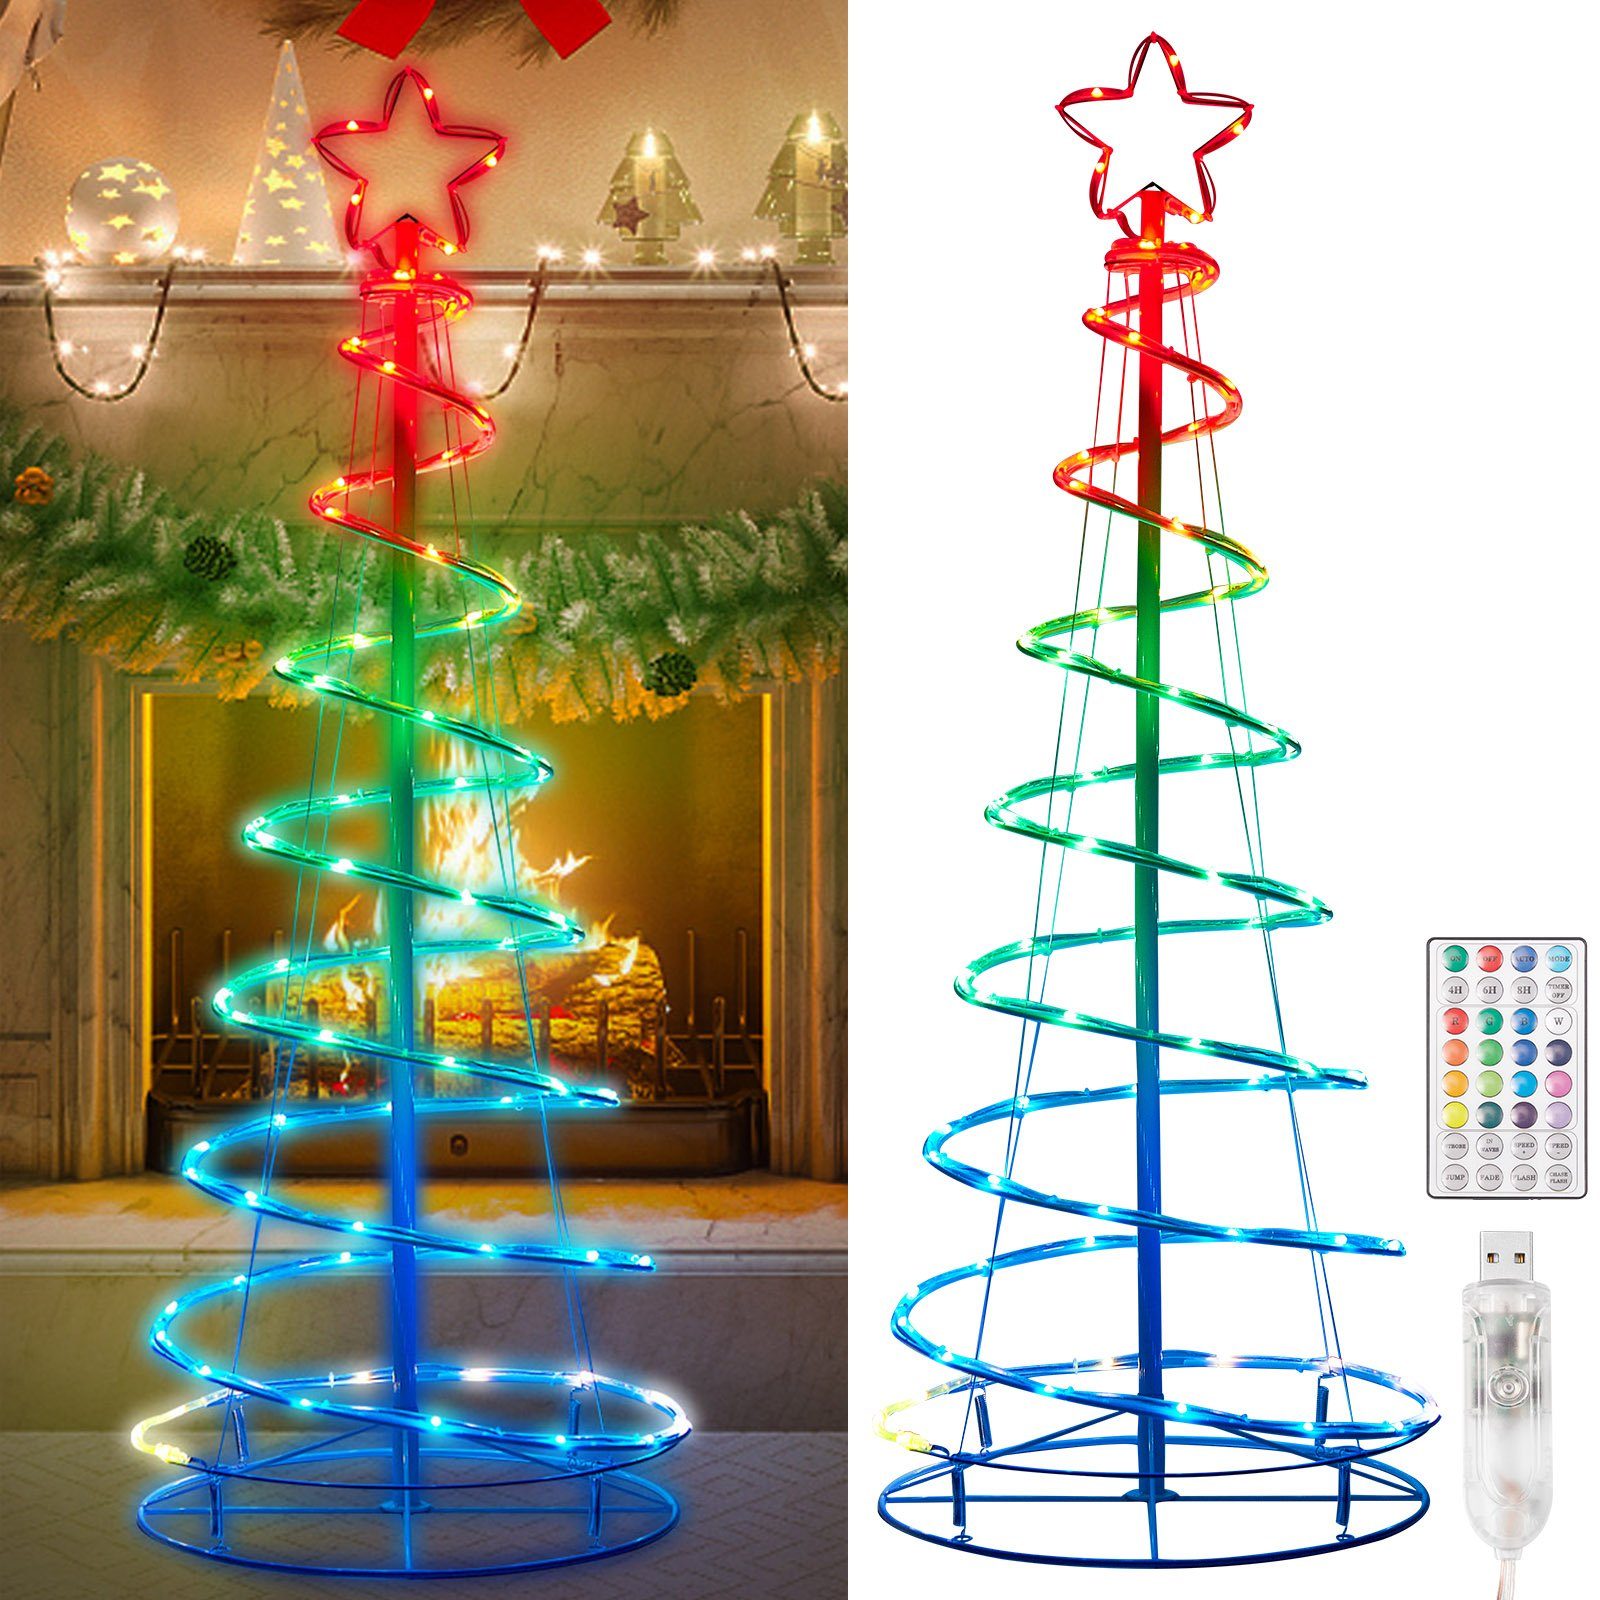 MUPOO LED-Baummantel LED Weihnachtsbaum LED-Lichterkette,USB LED Baummantel, 73/100/135LEDs Lichterkette Timer&Fernbedienung,Zusammenklappbar